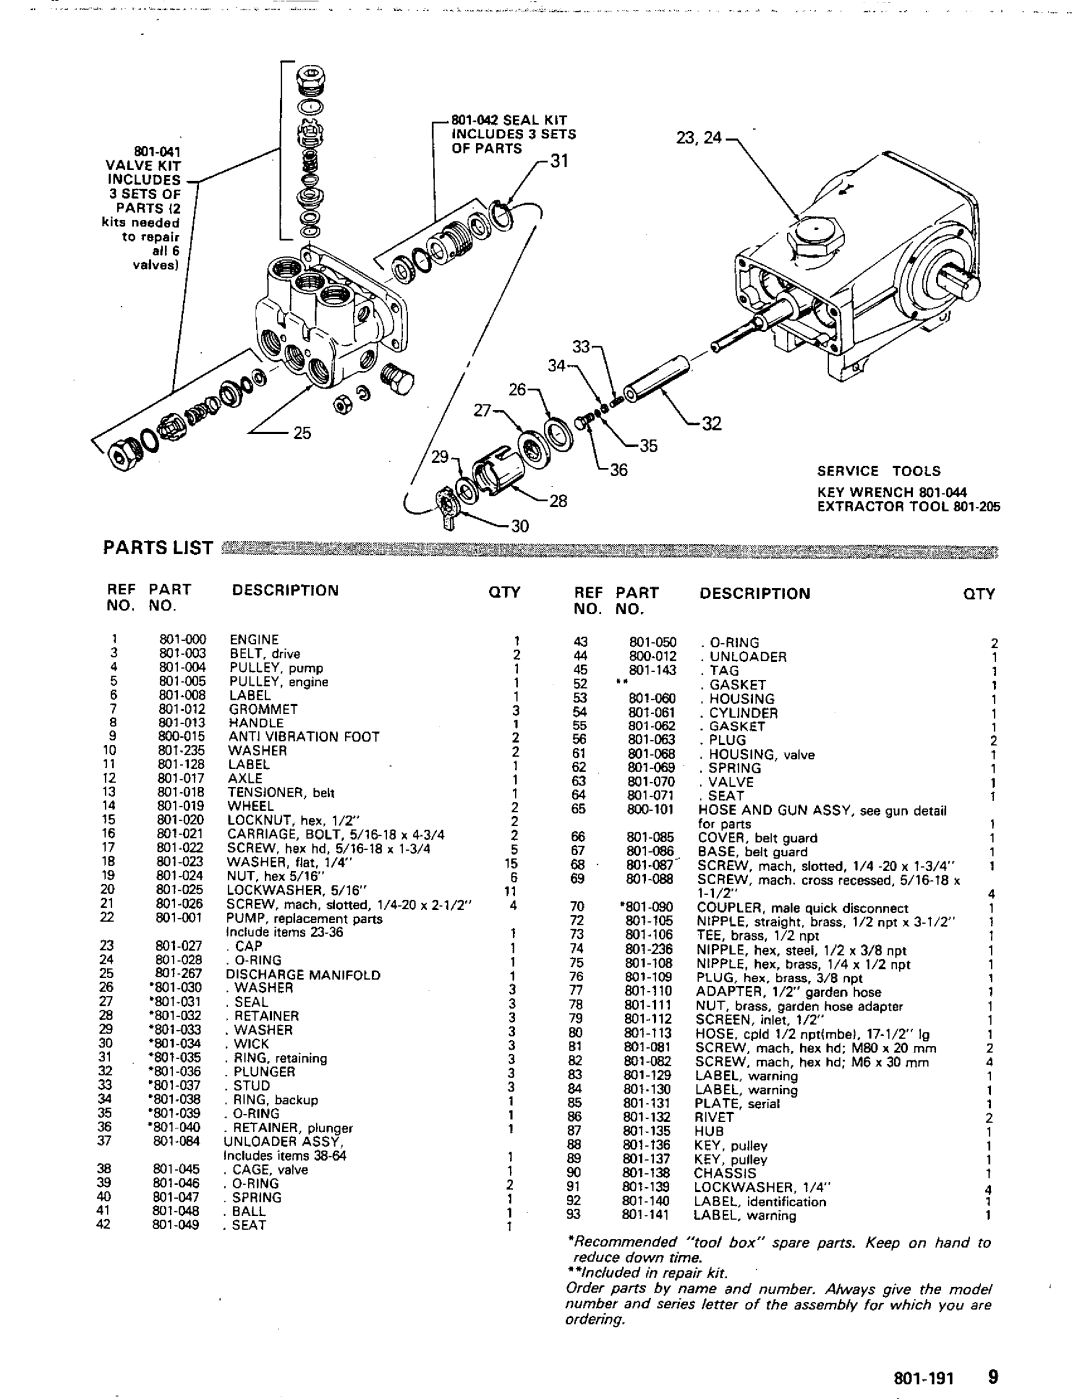 Graco Inc 800-100, 2104G manual Parts List, M6 x 30 mrn, 801-191, SEnT, Refpart Description No No 